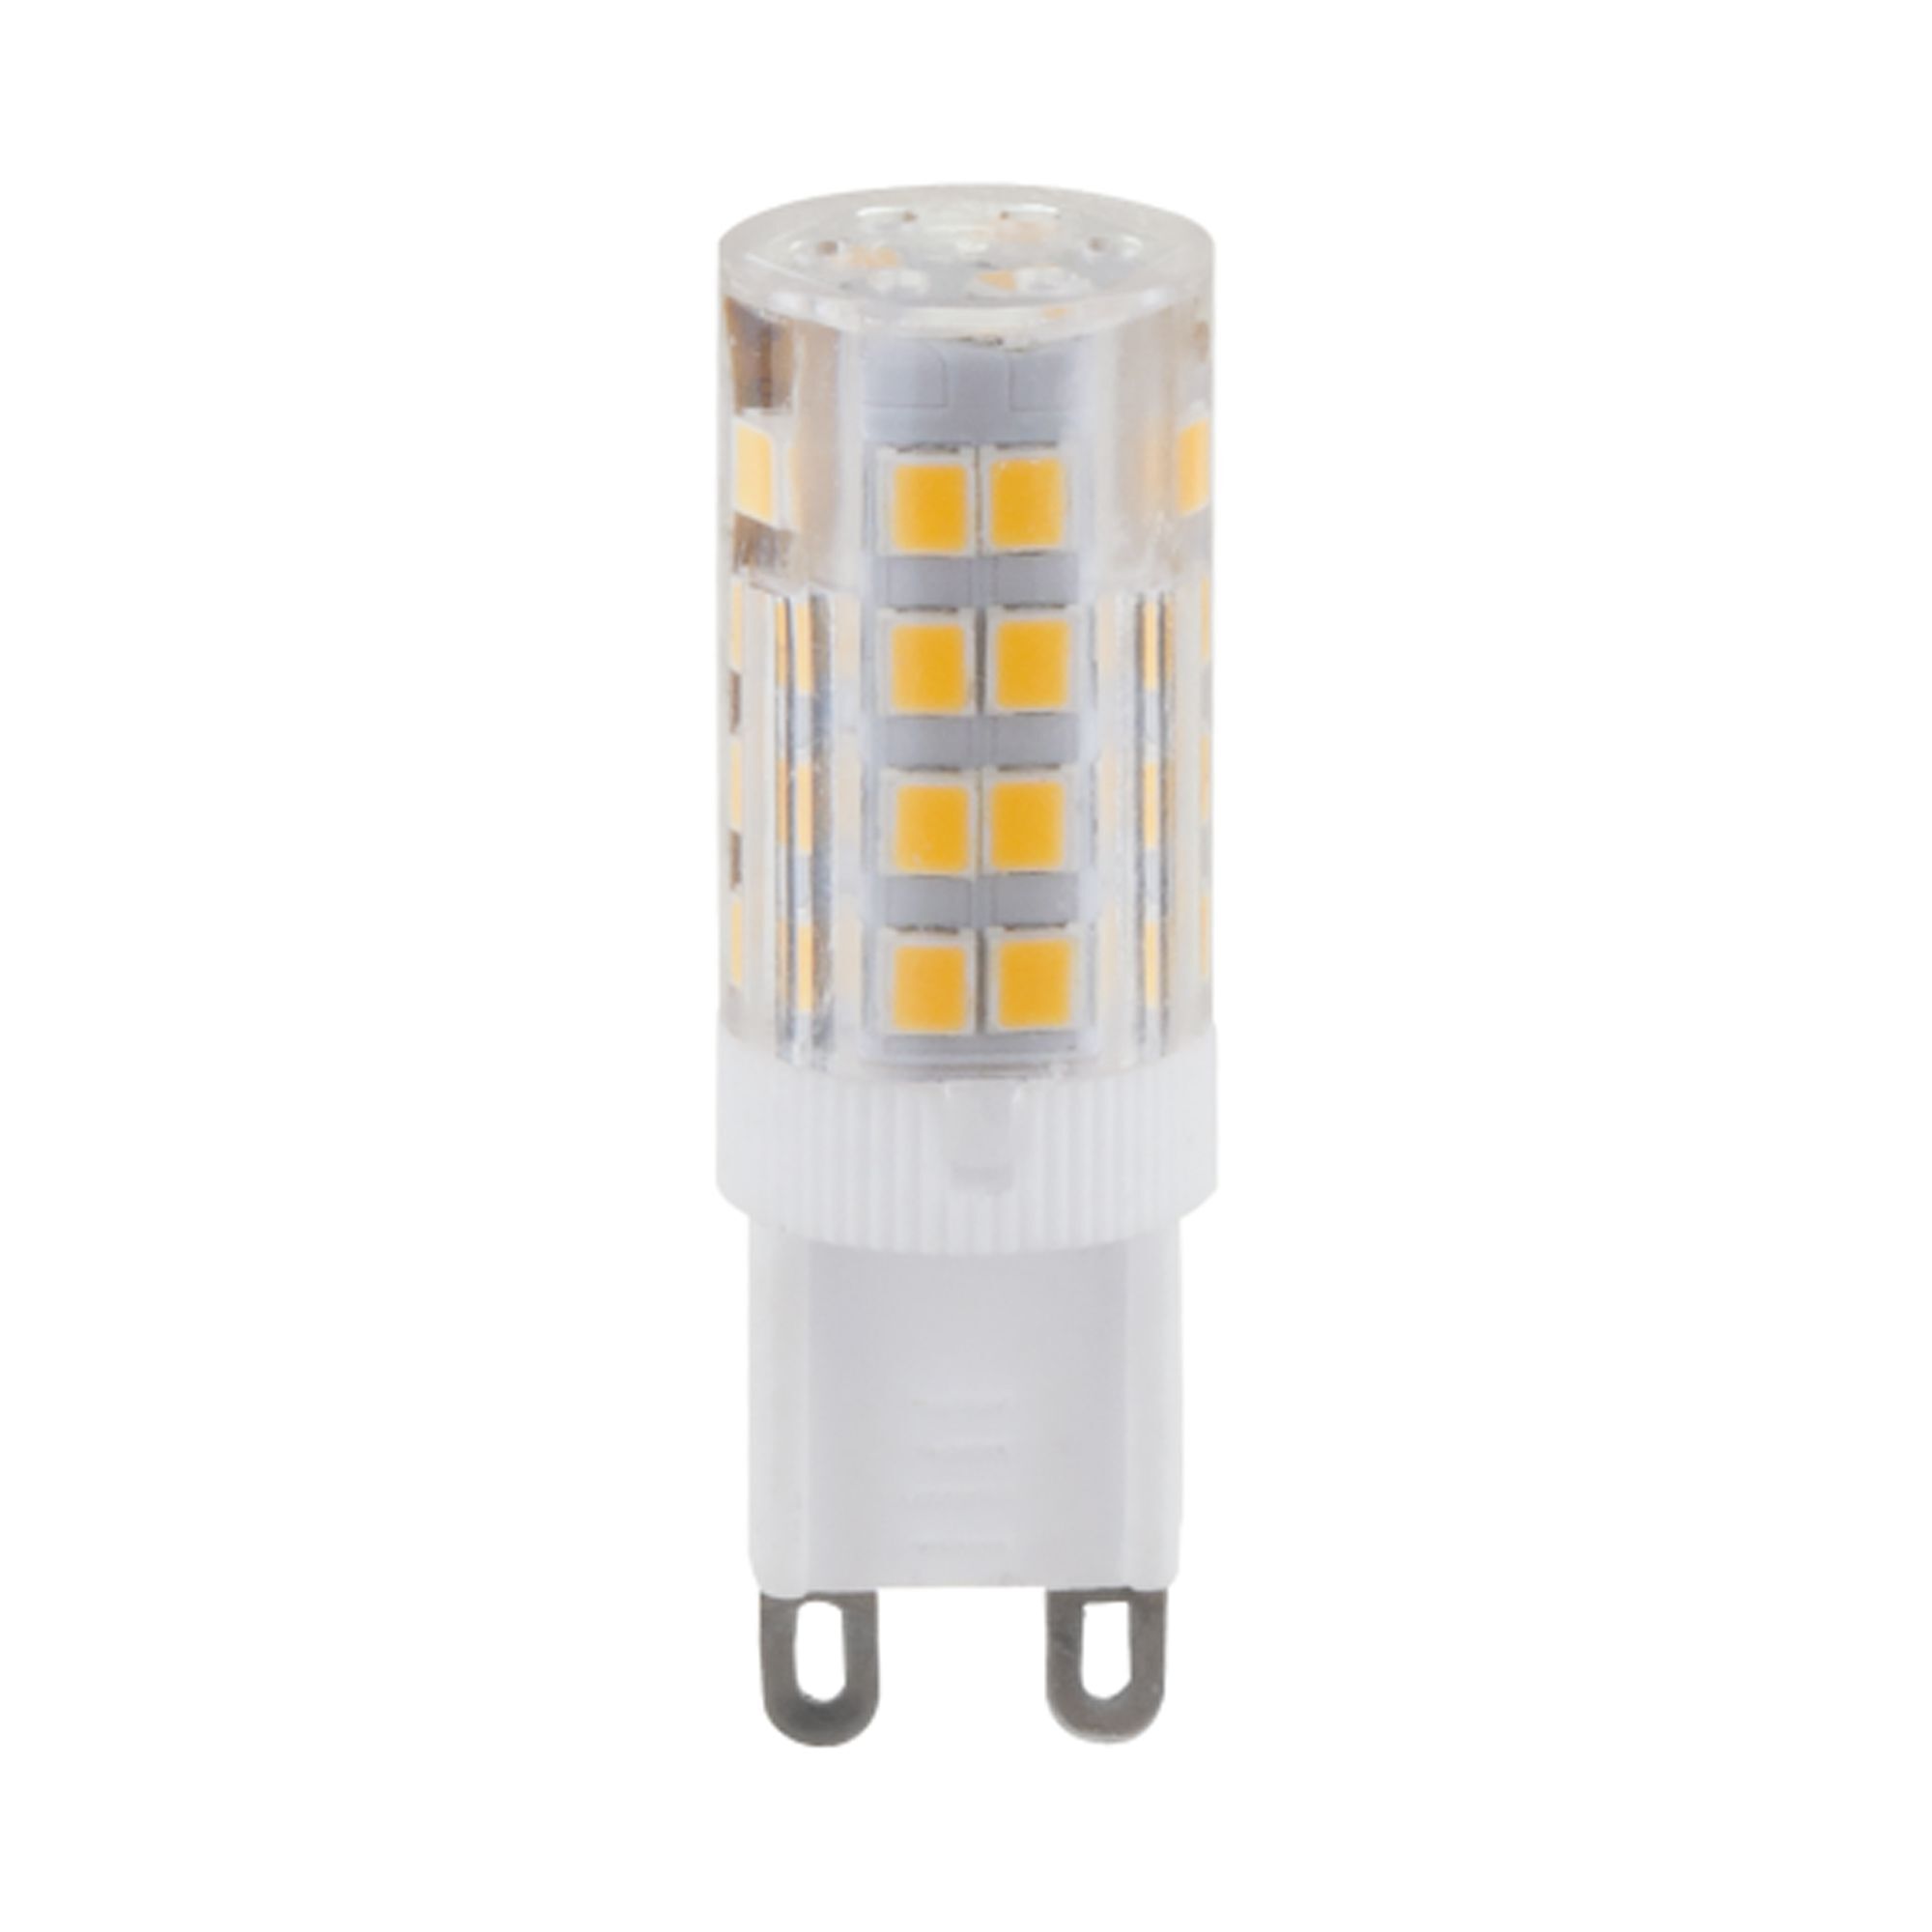 Лампа светодиодная Elektrostandard G9 JCD 5 Вт 4200К естественный свет 220 В капсула (BLG909) лампа светодиодная elektrostandard g4 jcd 5 вт 4200к естественный свет 220 в капсула blg420